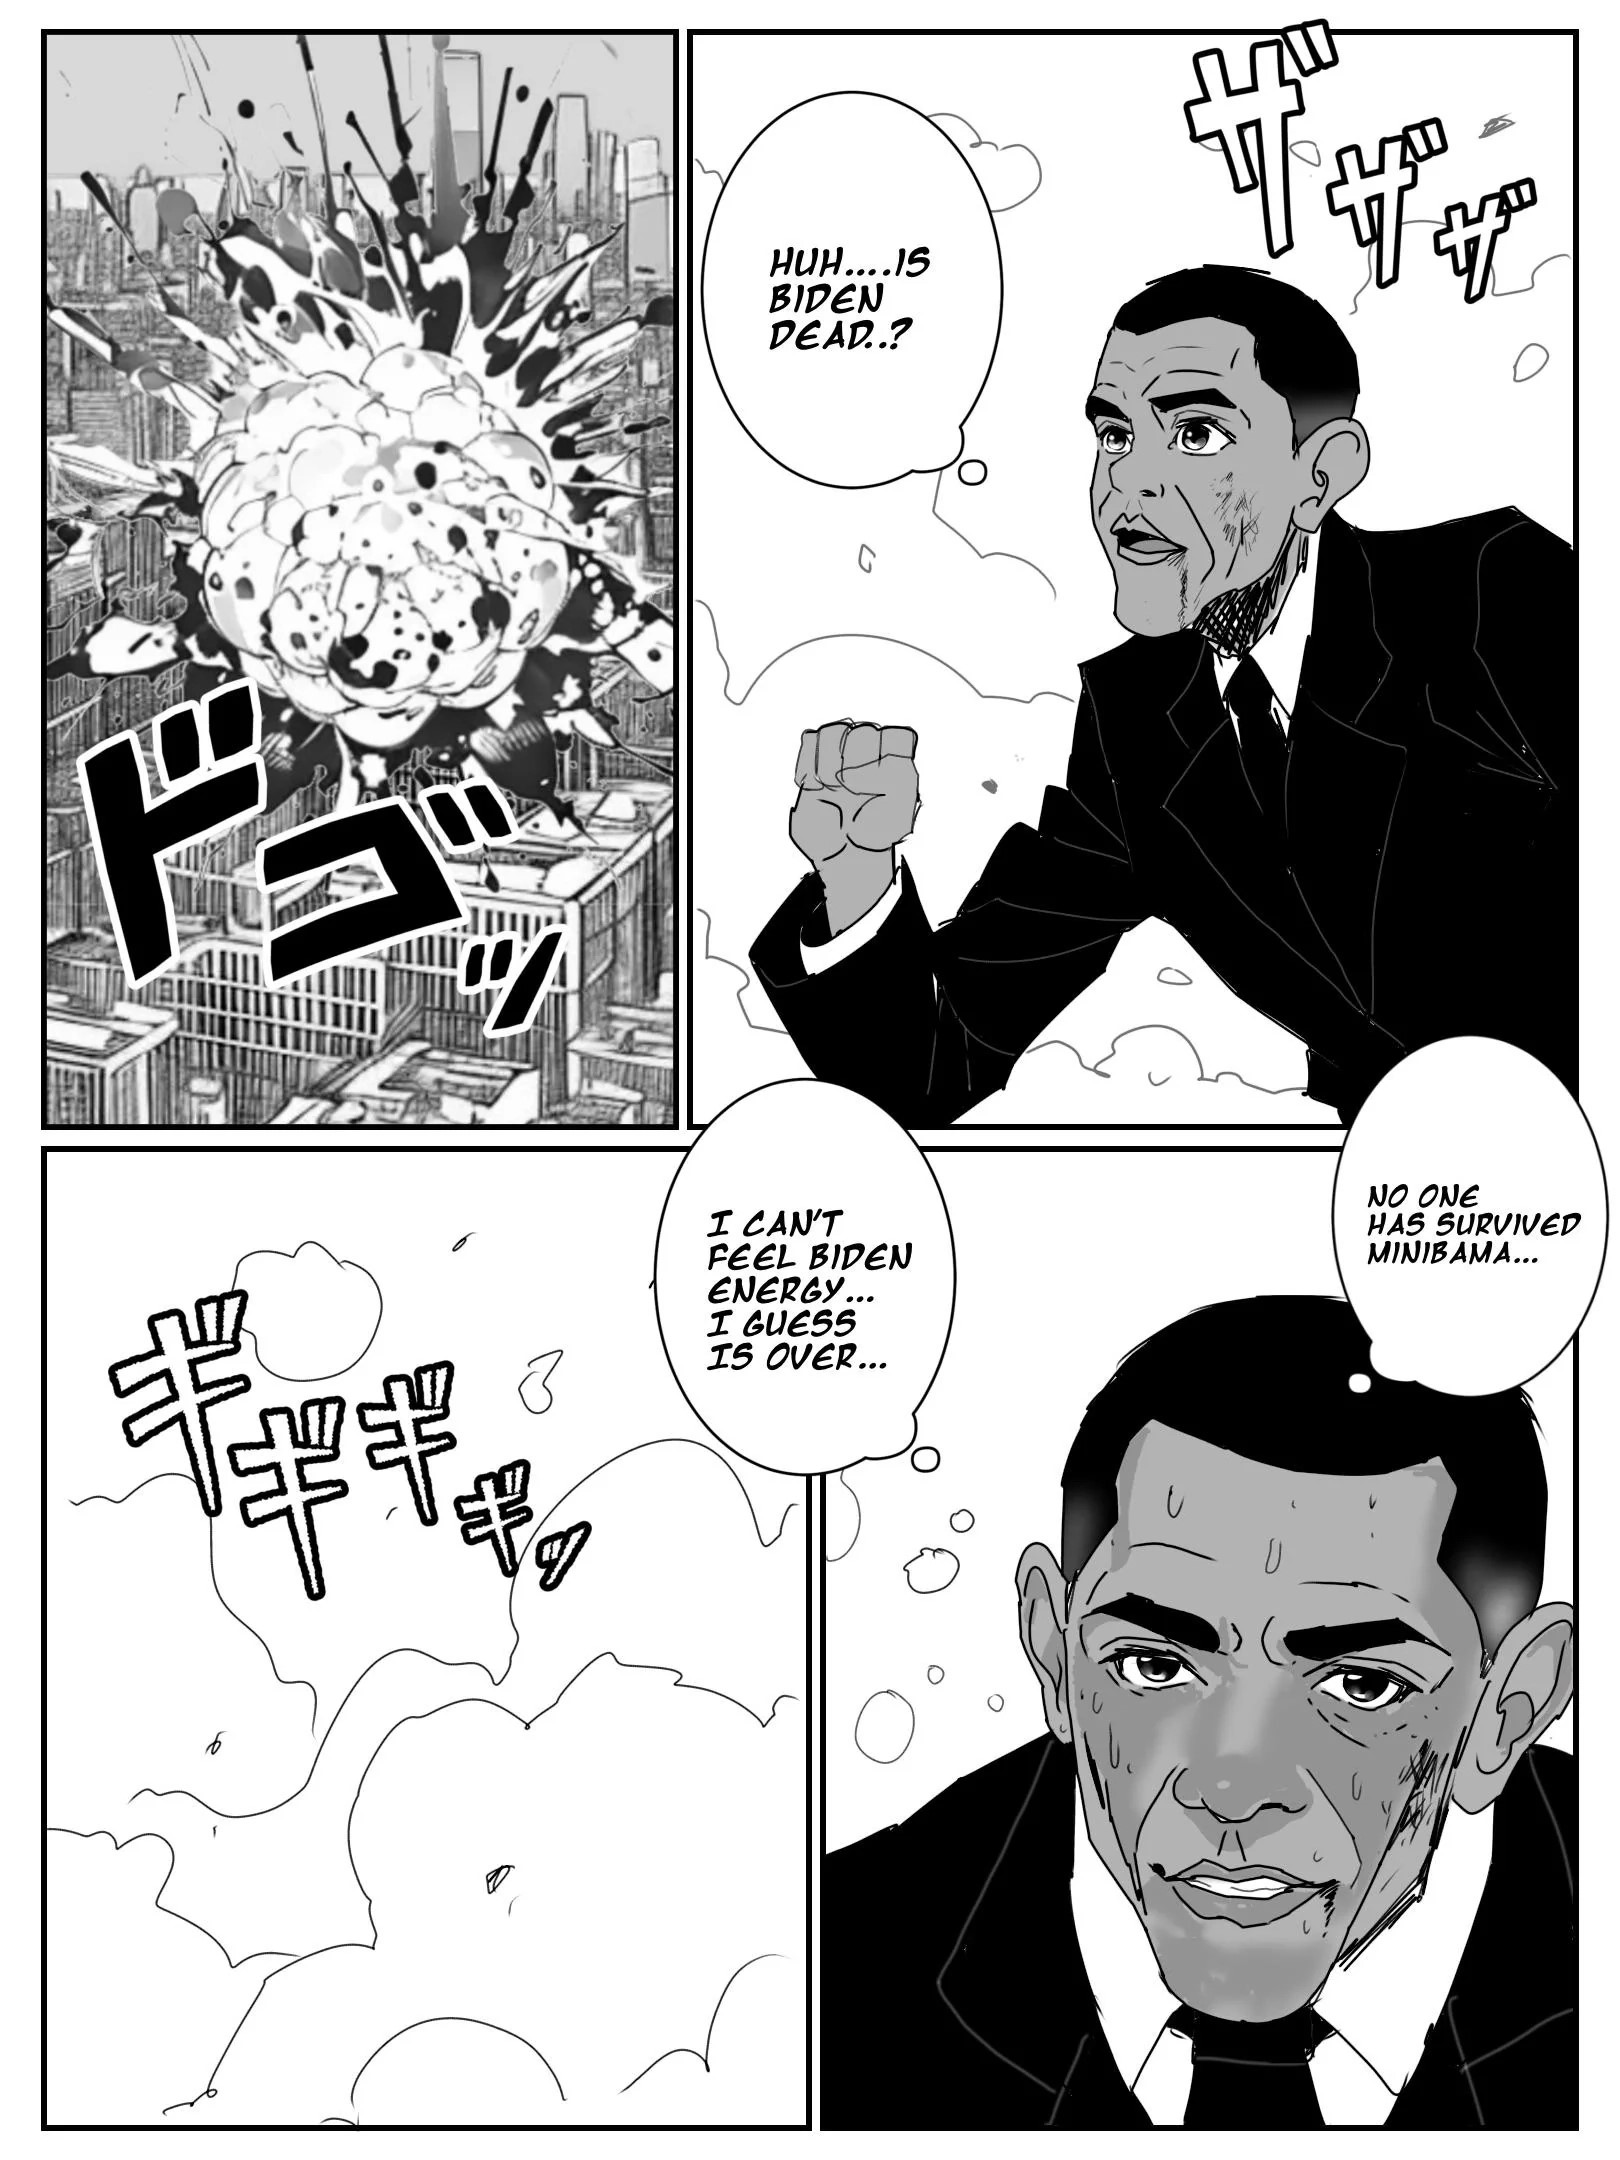 Biden Vs Obama - Page 1